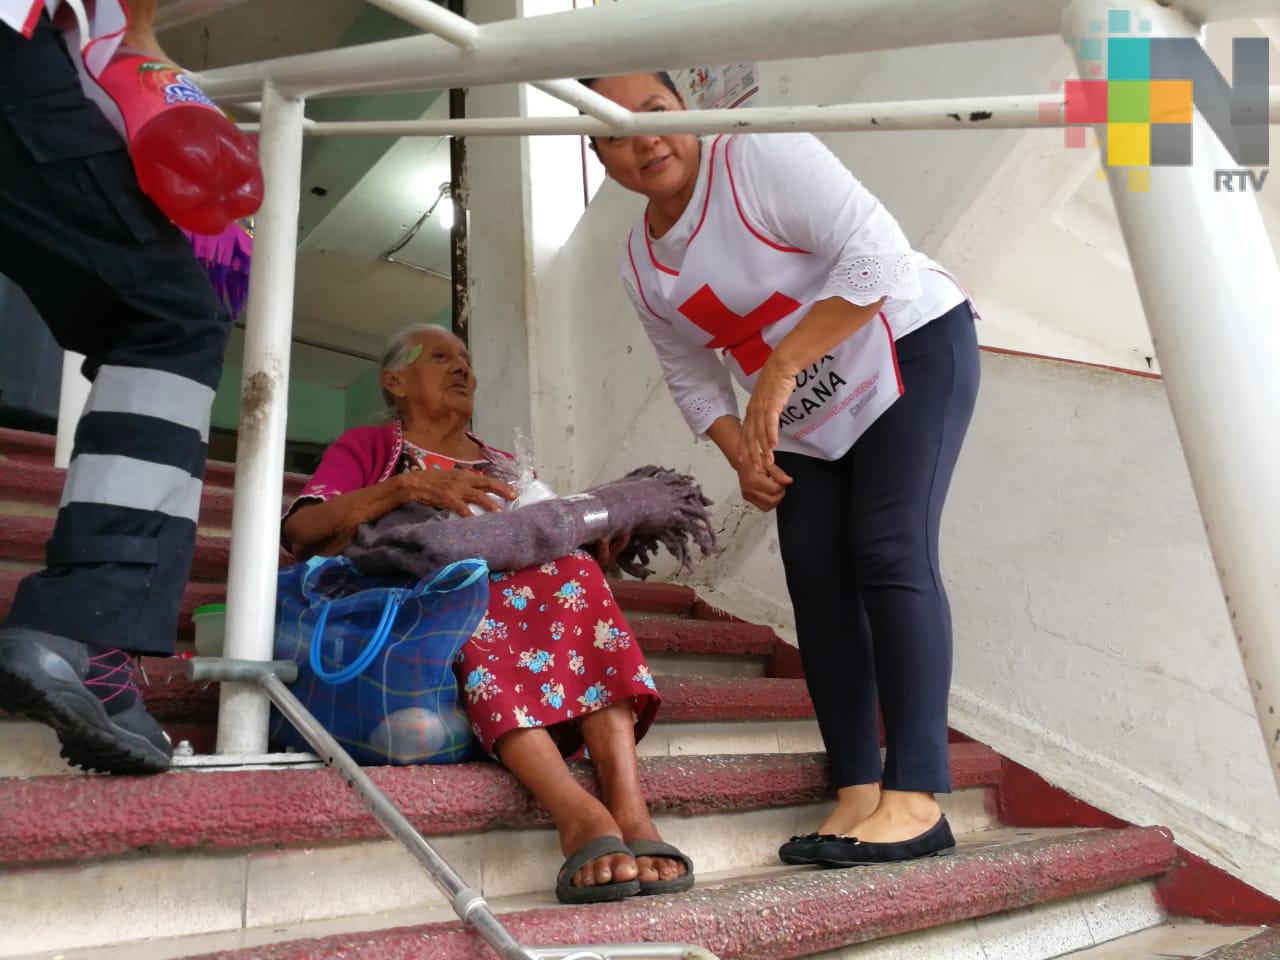 Cruz Roja de Coatzacoalcos llevó alimentos y cobijas a indigentes por el Día de Reyes